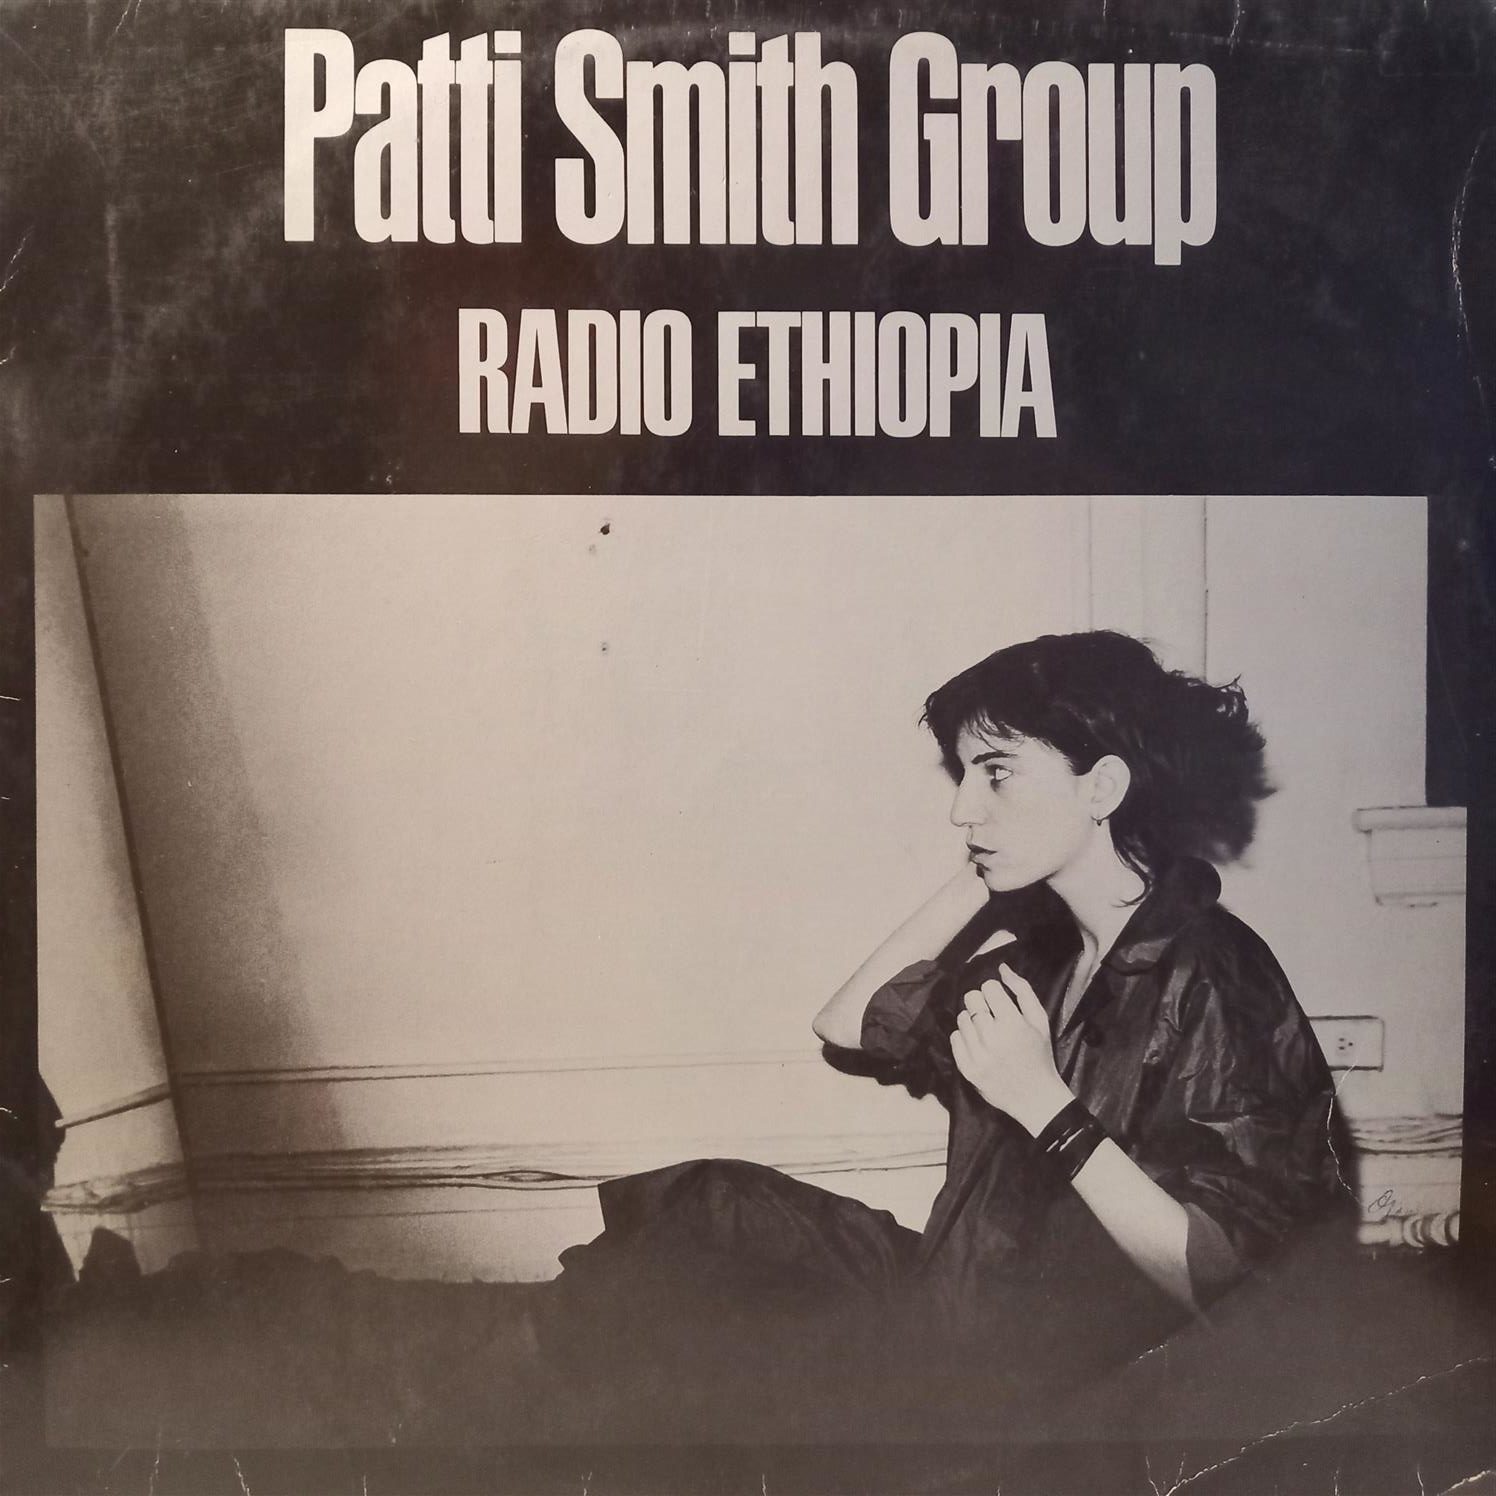 PATTI SMITH GROUP – RADIO ETHIOPIA ON